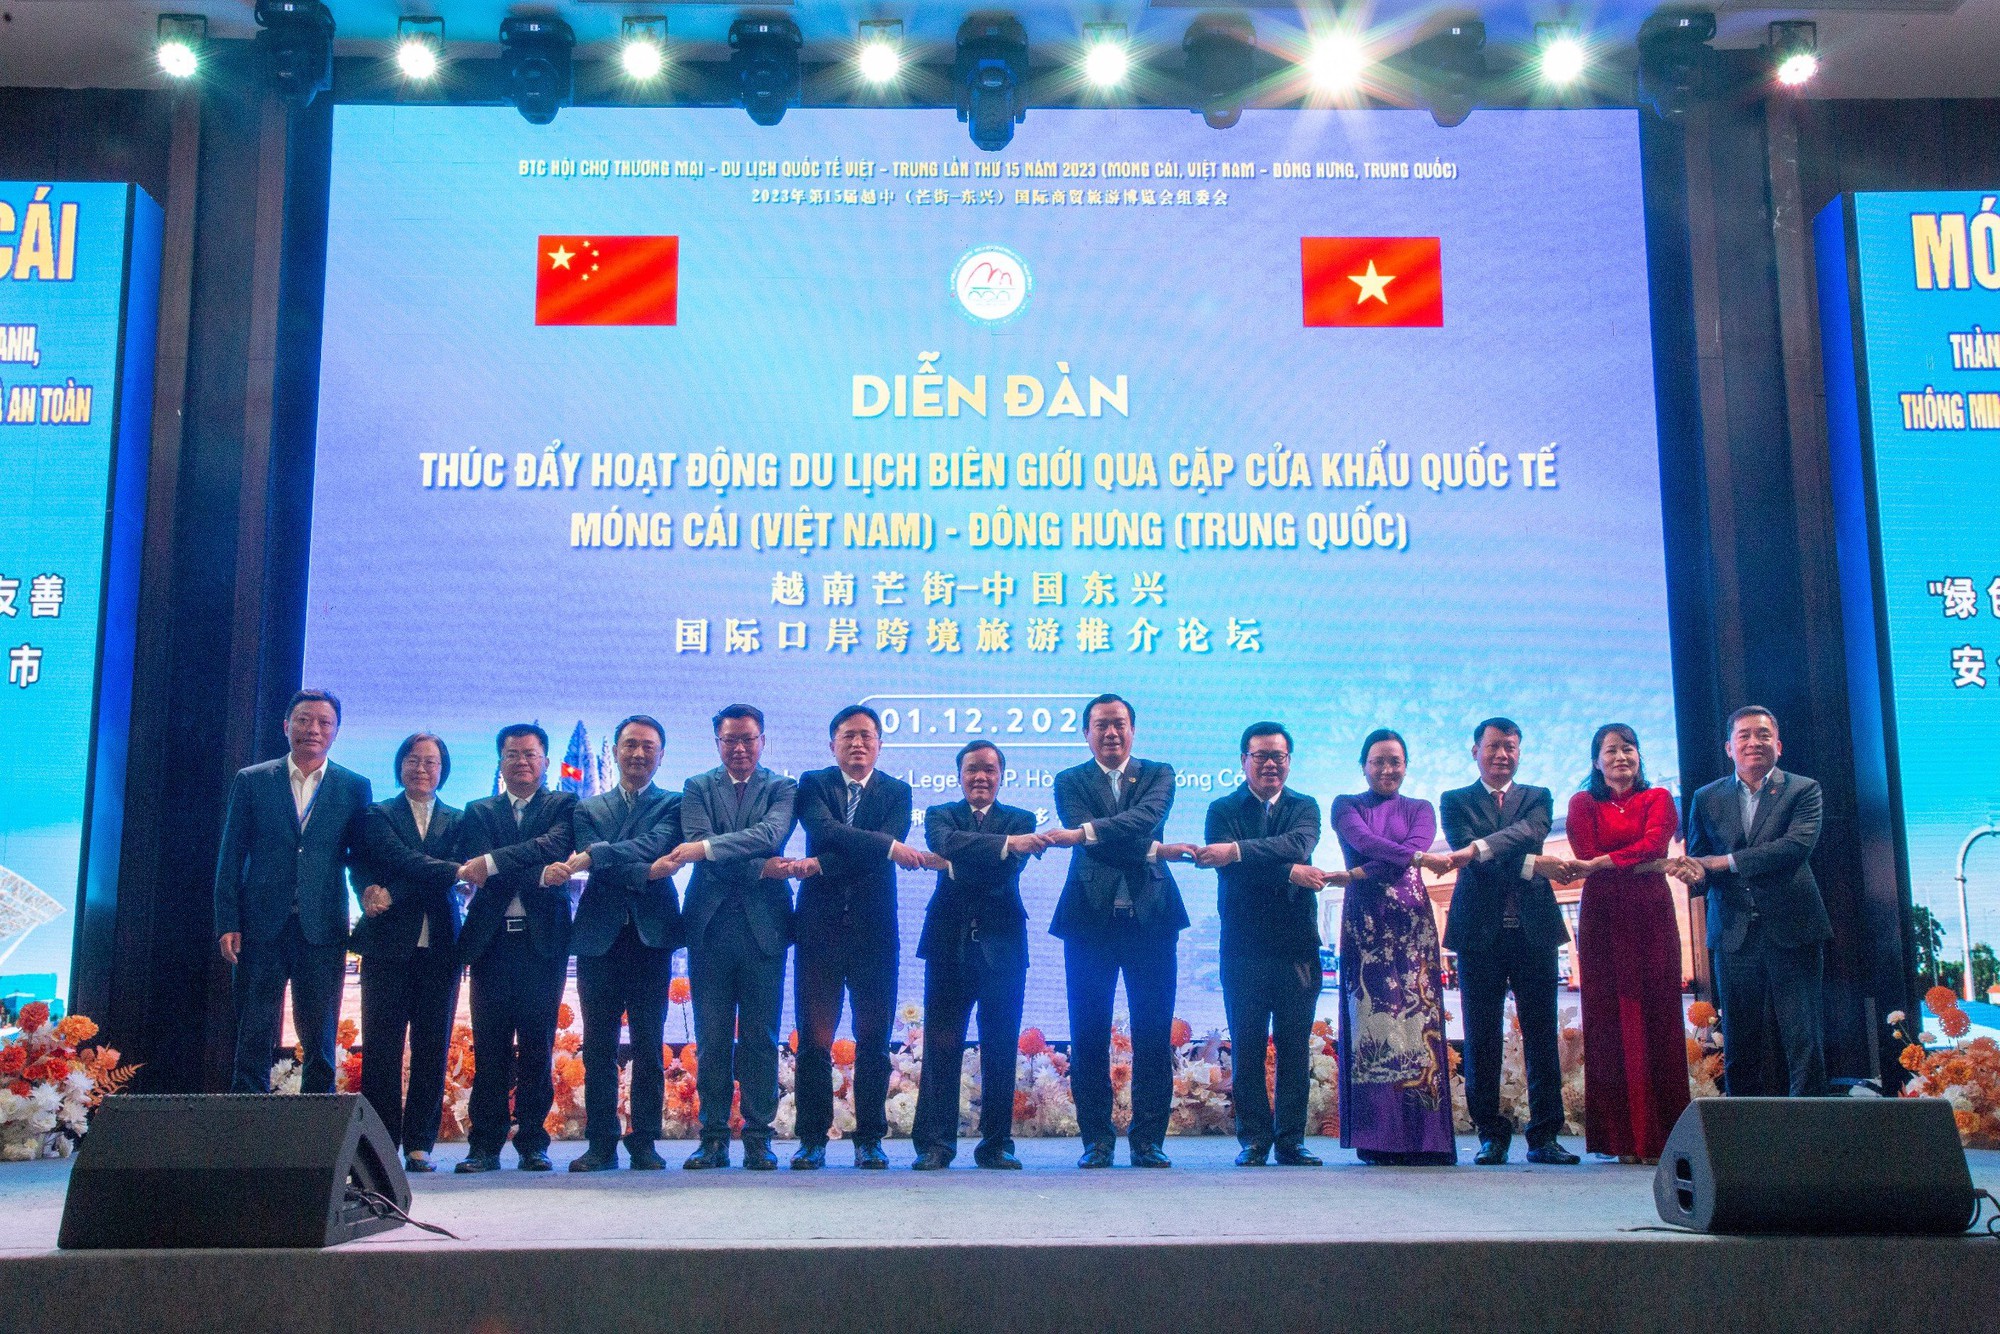 Cục trưởng Nguyễn Trùng Khánh: Cửa khẩu quốc tế Móng Cái - Đông Hưng sẽ là cầu nối thúc đẩy hợp tác thu hút khách du lịch Việt Nam - Trung Quốc - Ảnh 4.